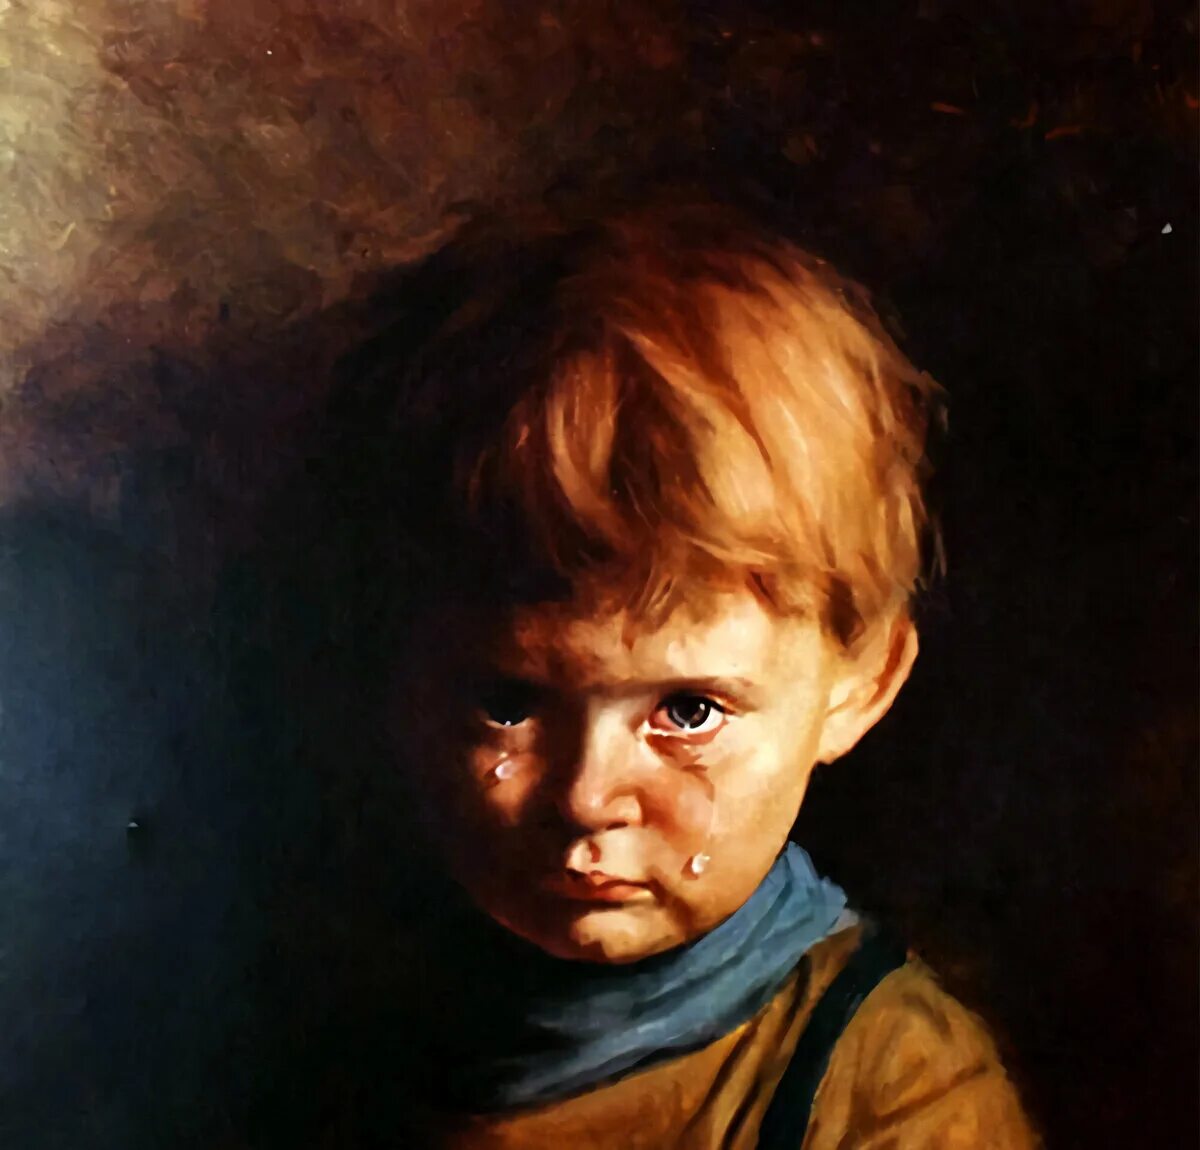 Какую картину считают проклятой. Джованни Браголин Плачущий мальчик. Картина Плачущий мальчик Джованни Браголина. Джованни Браголин Плачущий мальчик картины художников Италии.